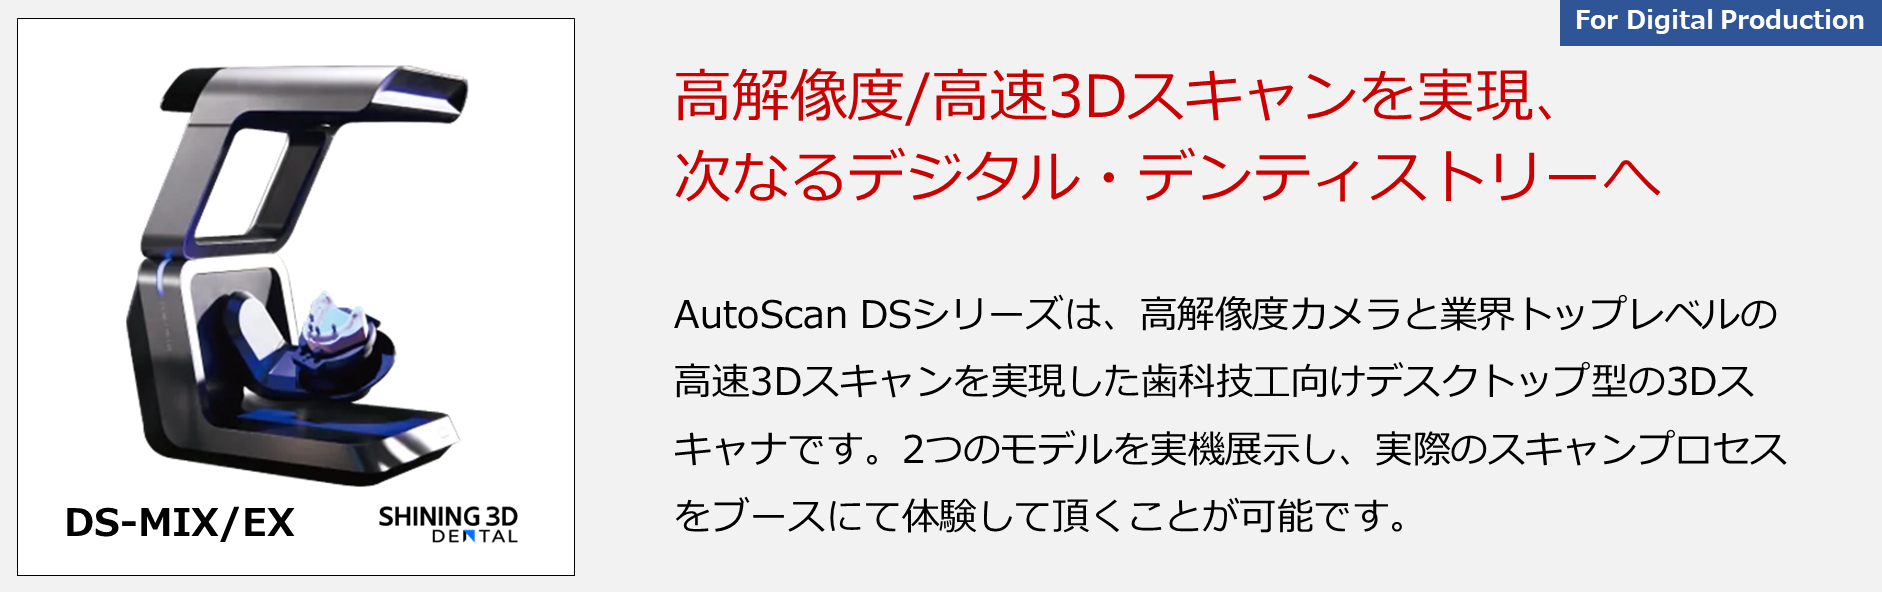 AutoScan DSシリーズは、高解像度カメラと業界トップレベルの高速3Dスキャンを実現した歯科技工向けデスクトップ型の3Dスキャナです。2つのモデルを実機展示し、実際のスキャンプロセスをブースにて体験して頂くことが可能です。